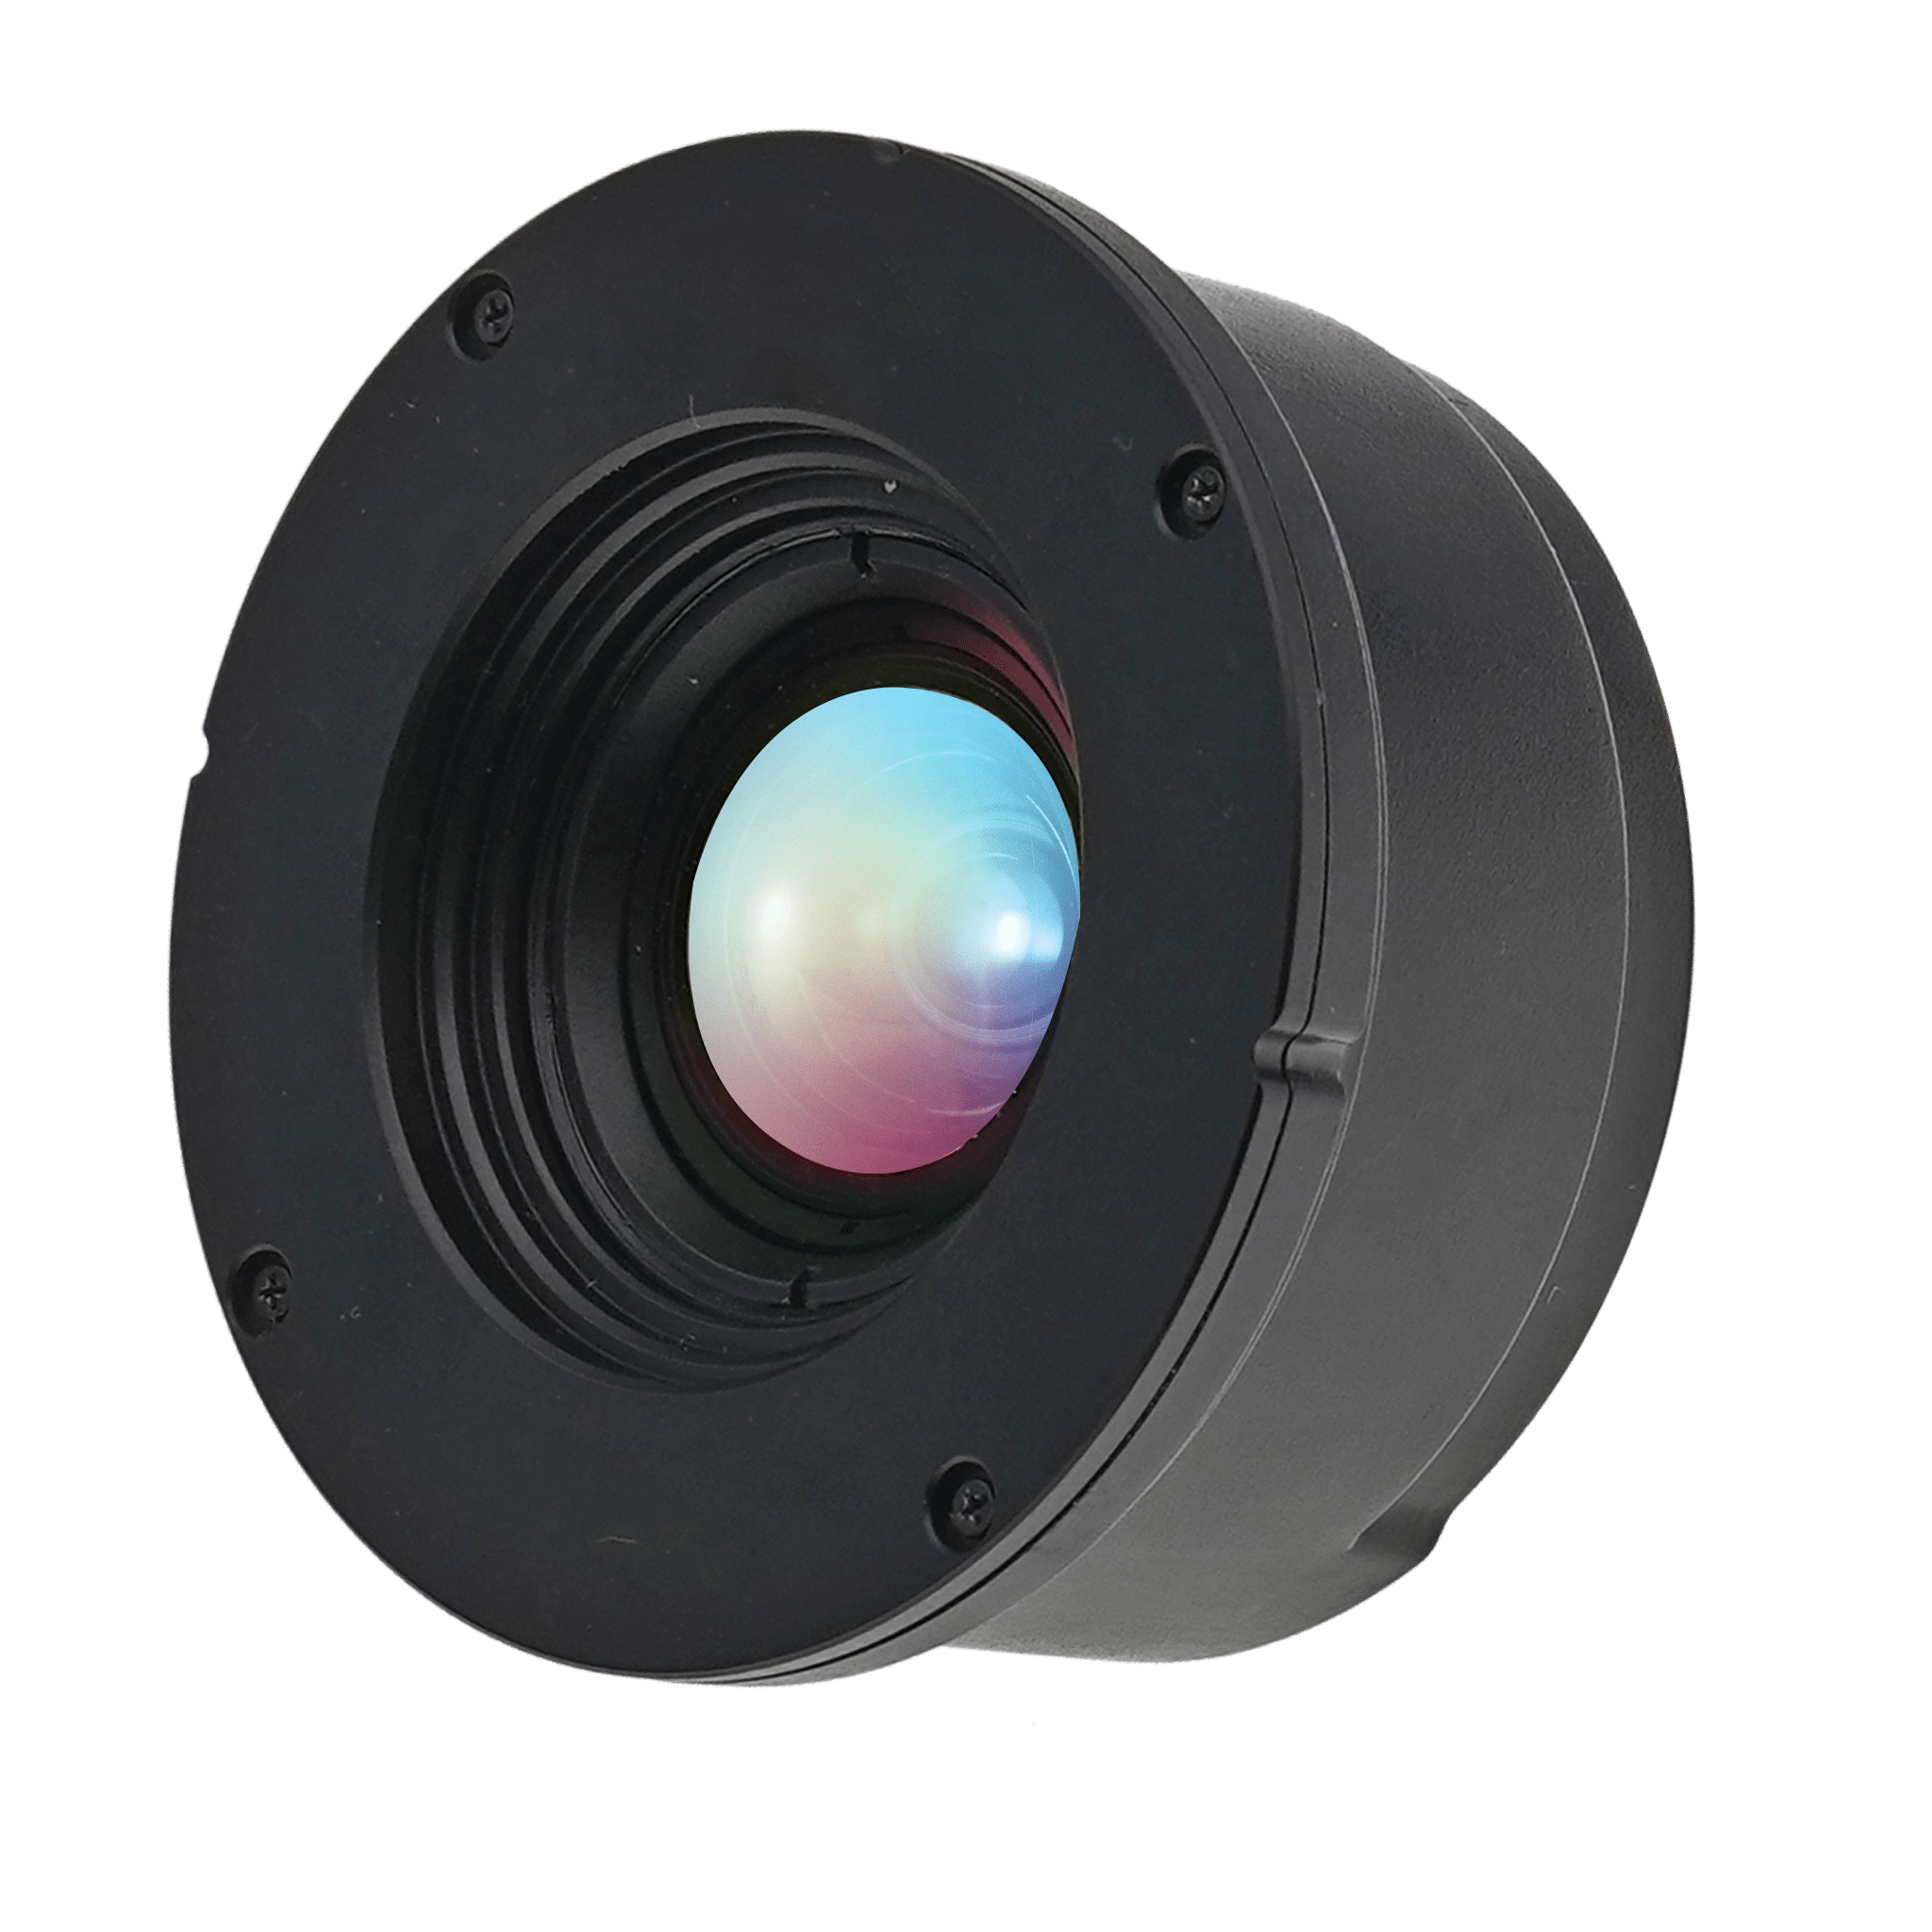 Viper P1280 and P640 handheld thermal camera - 25 deg standard lens